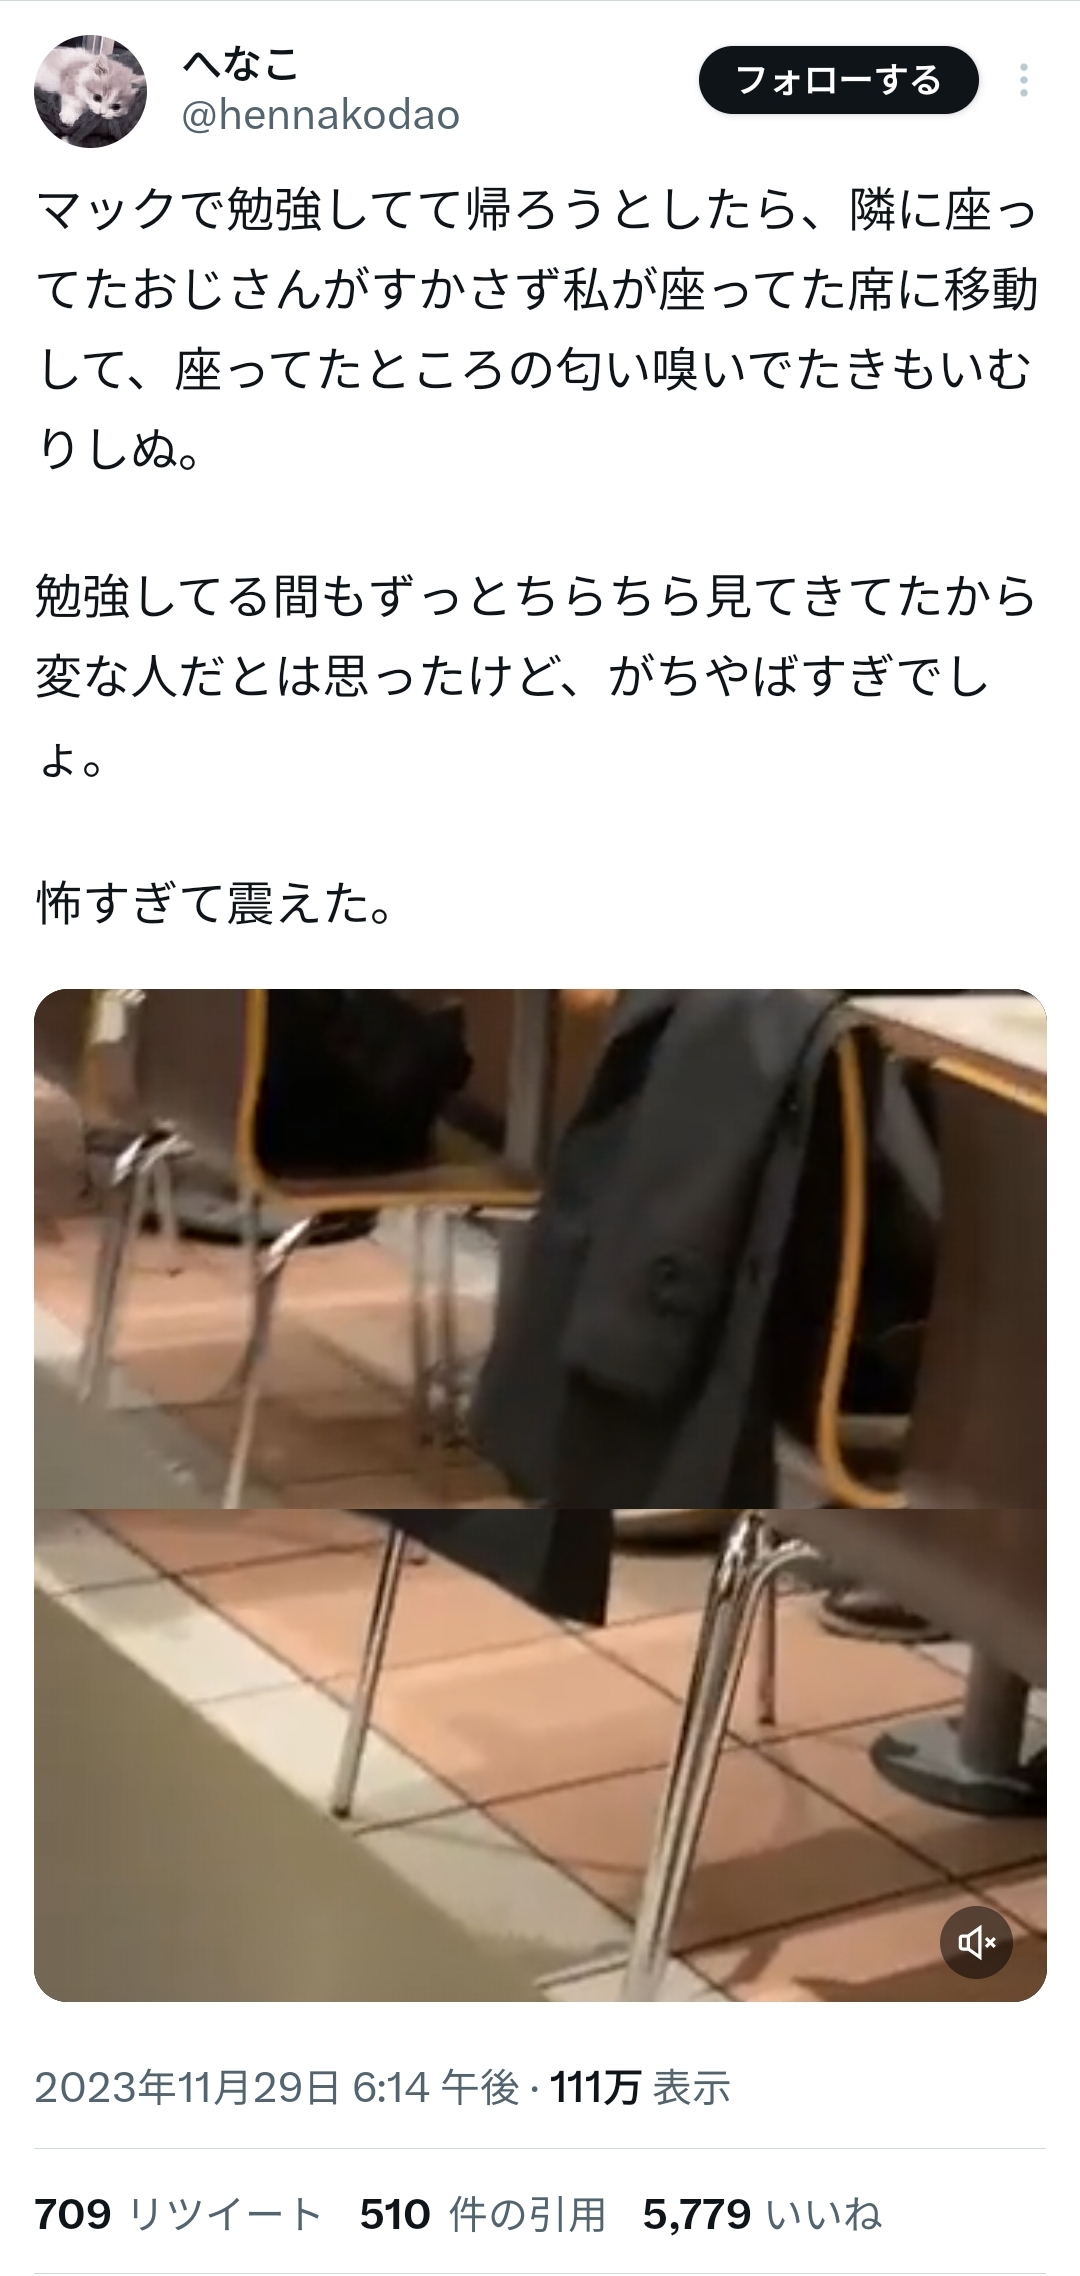 【動画】マックで女子高生が席を立った瞬間、席を移動しJKの座席の匂いを嗅ぐオッサンが撮影される